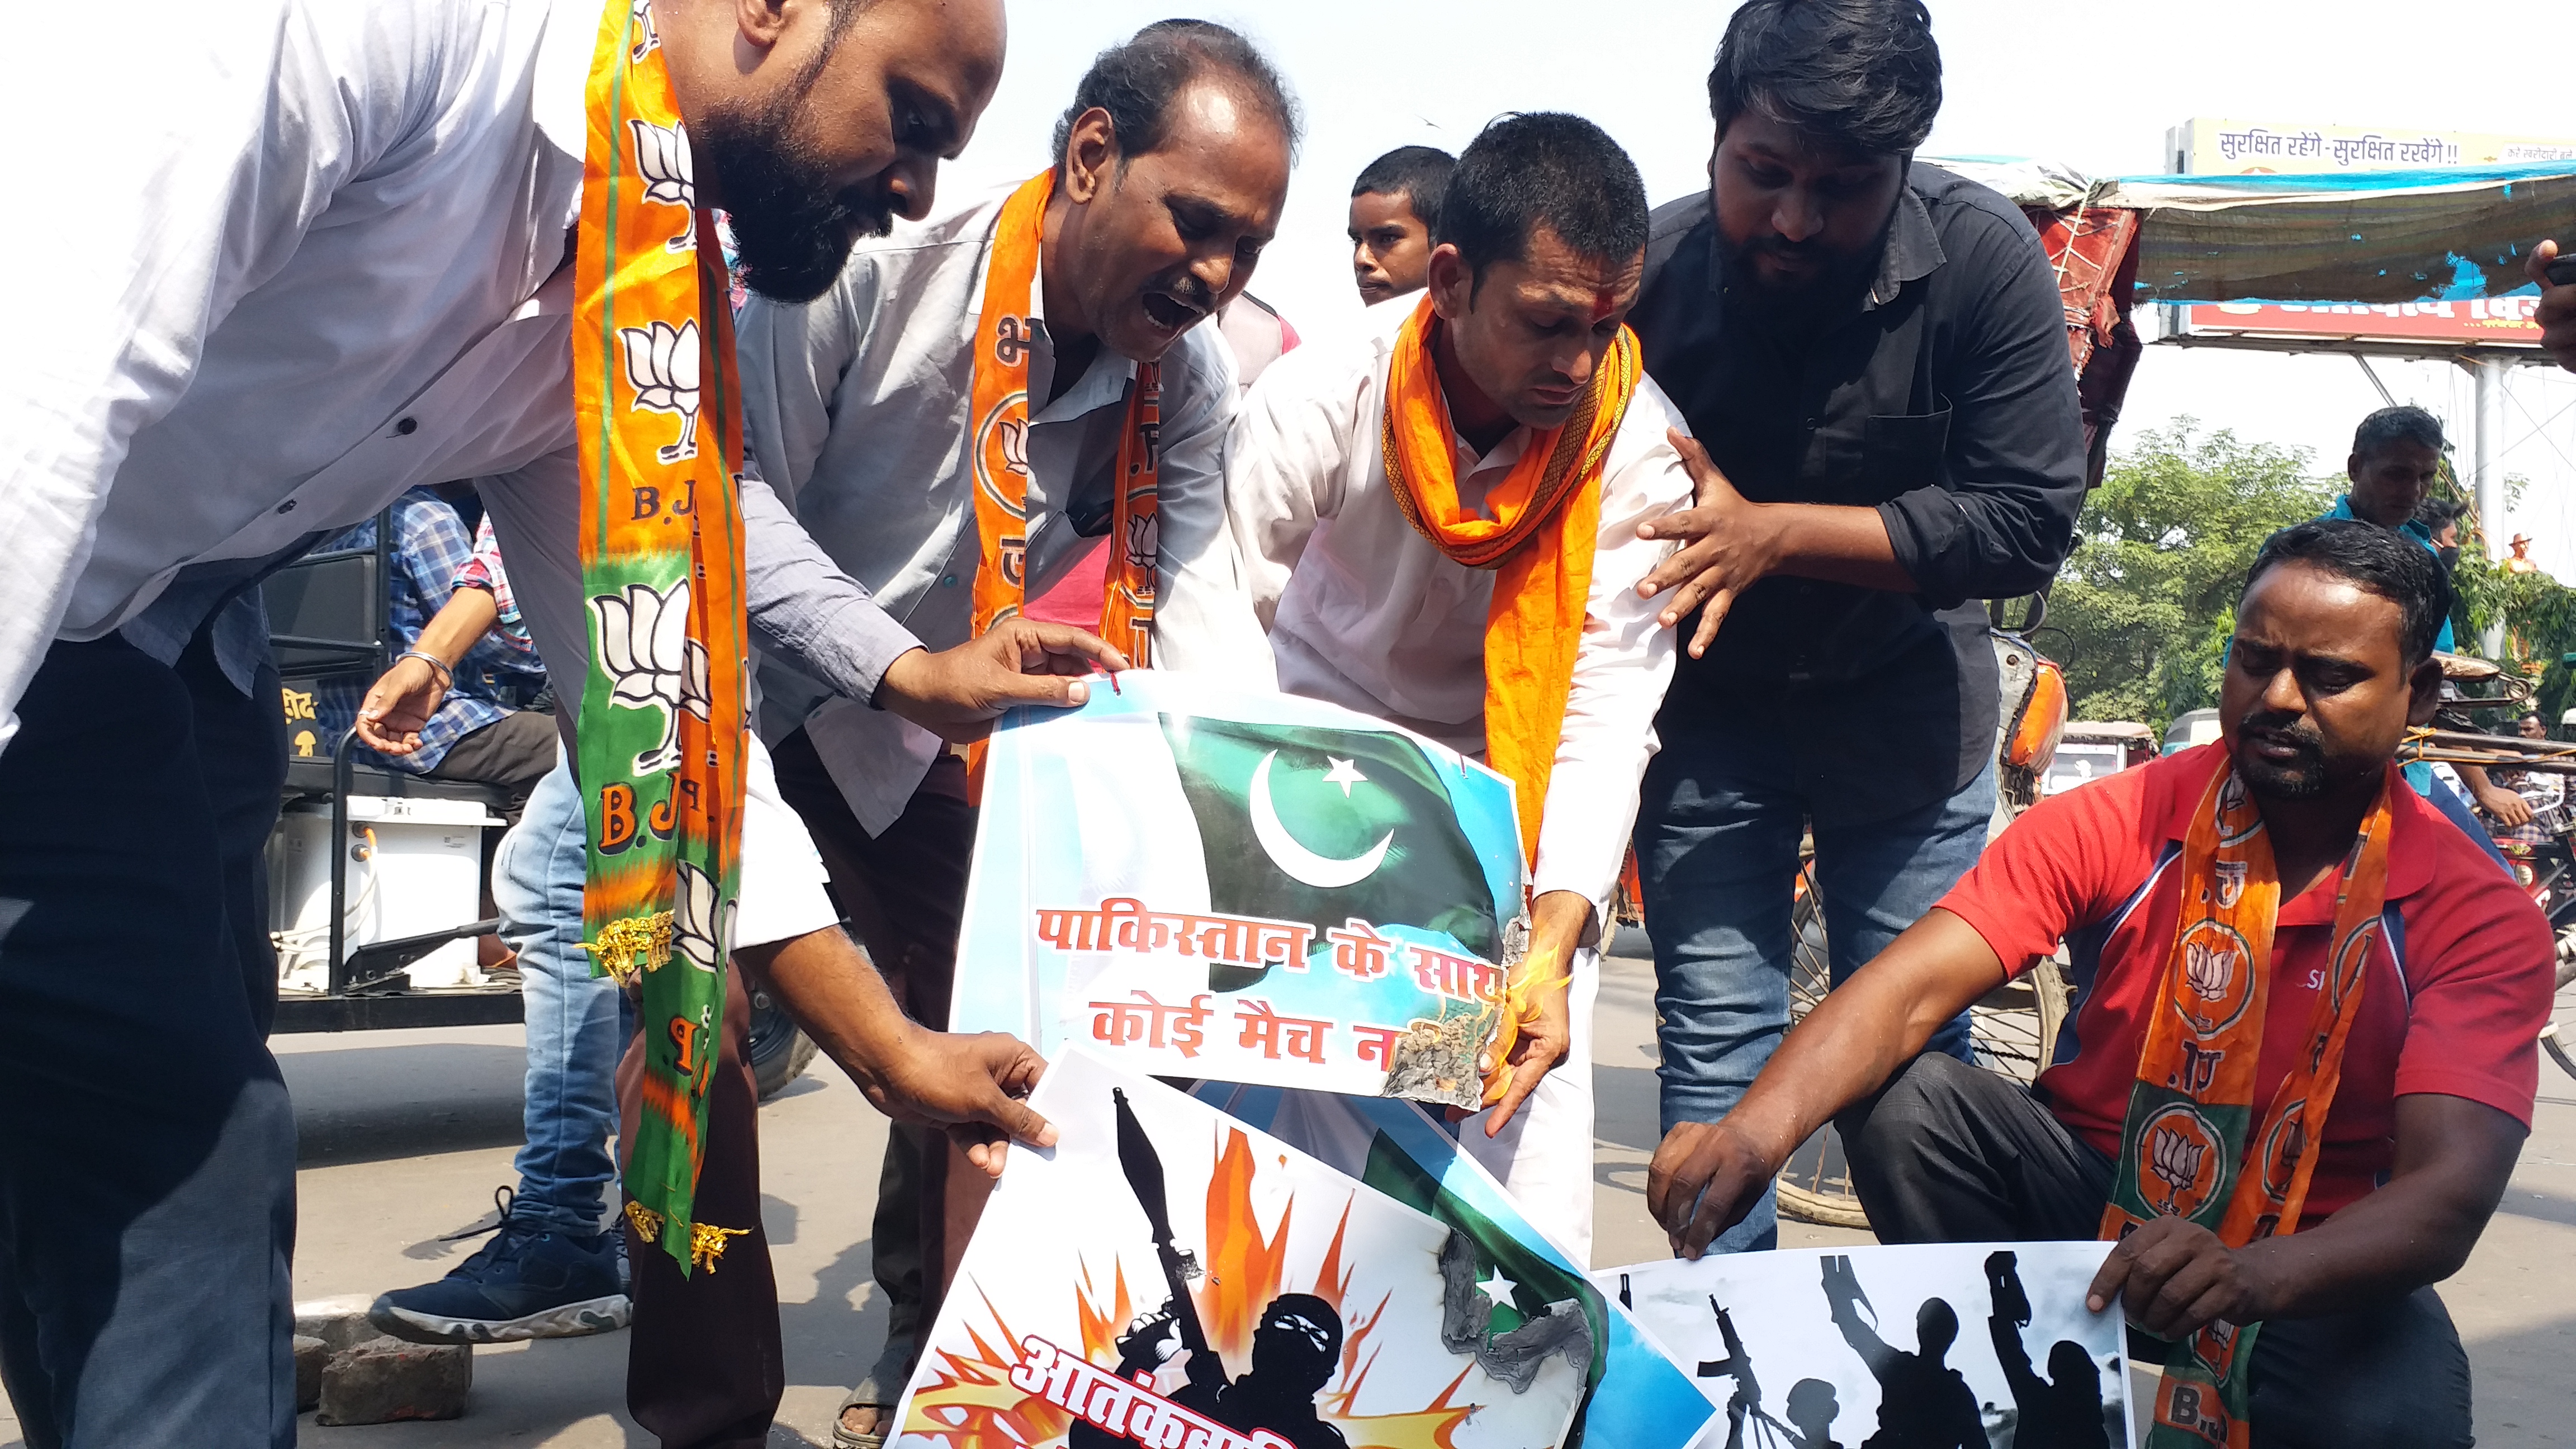 پٹنہ: ٹوئنٹی ولڈ کپ میں بھارت پاکستان مقابلے کی مخالفت